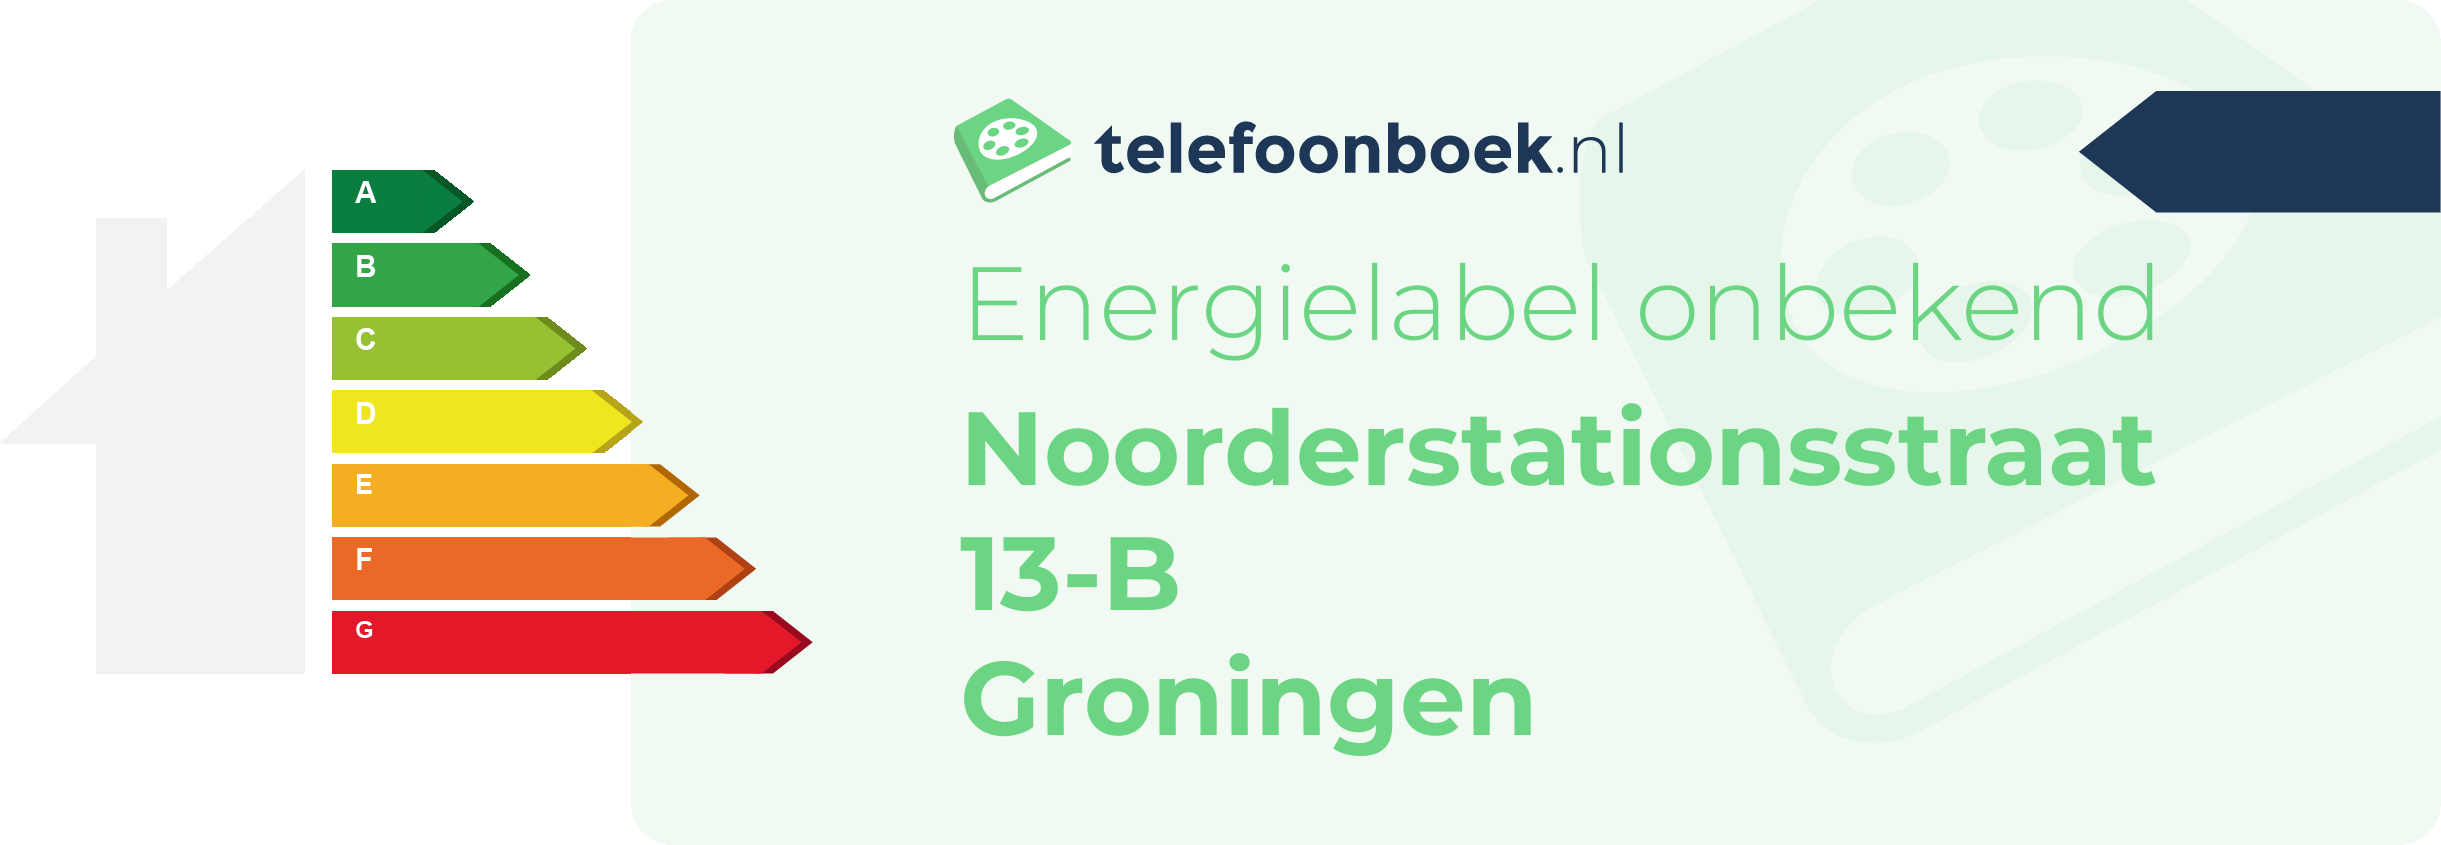 Energielabel Noorderstationsstraat 13-B Groningen